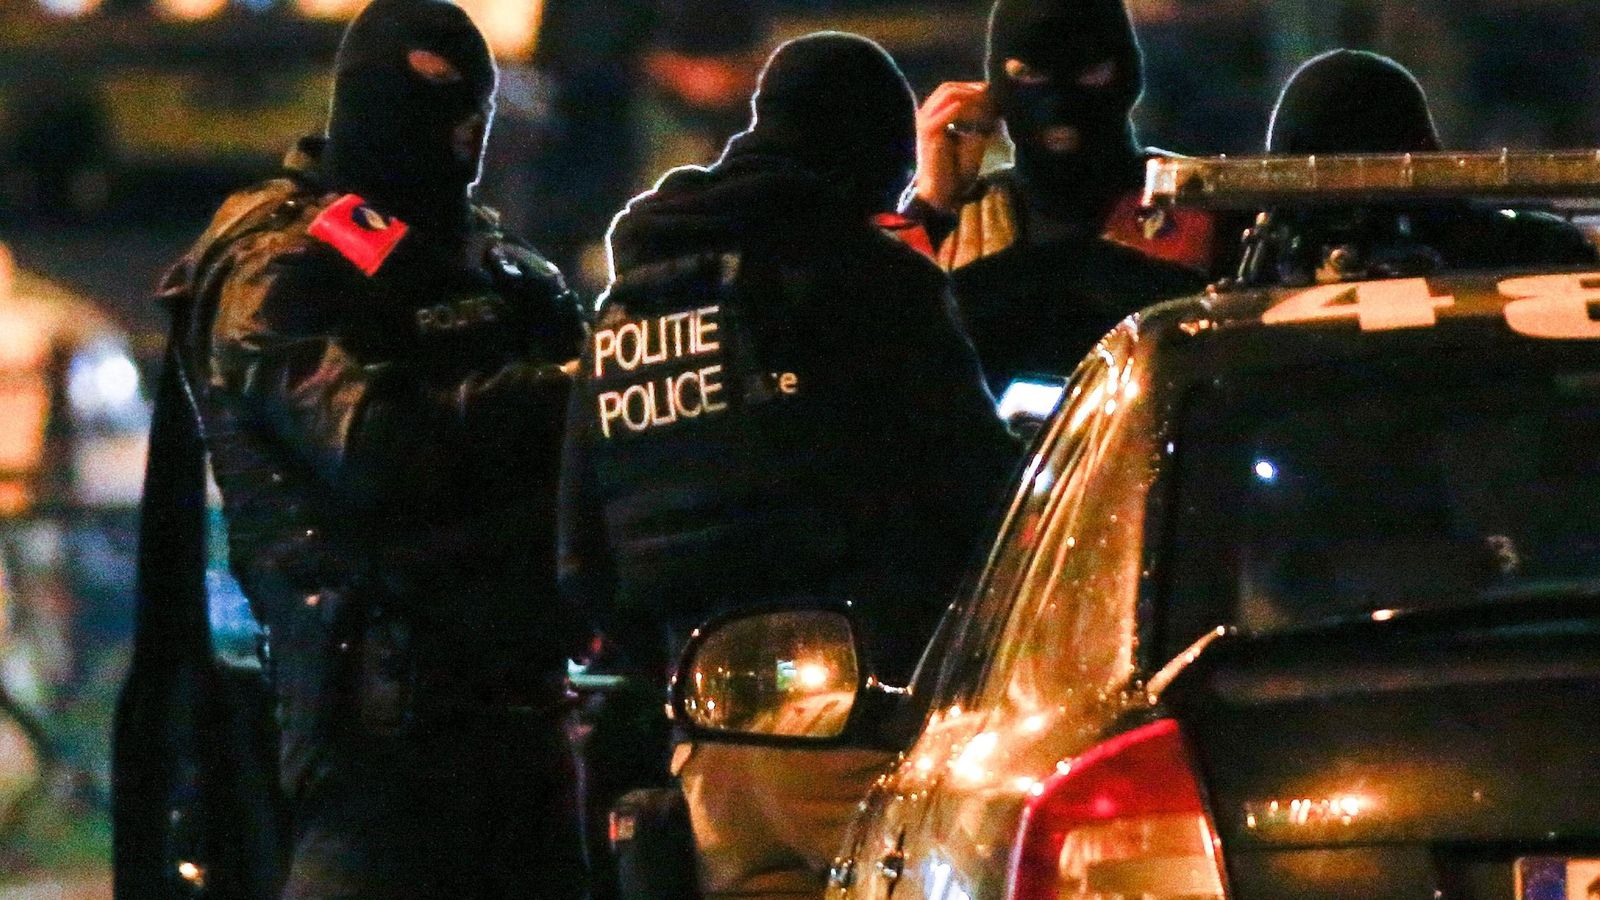 Foto: Imagen de la operación policial desarrollada en Molenbeek el pasado día 22. (Reuters)